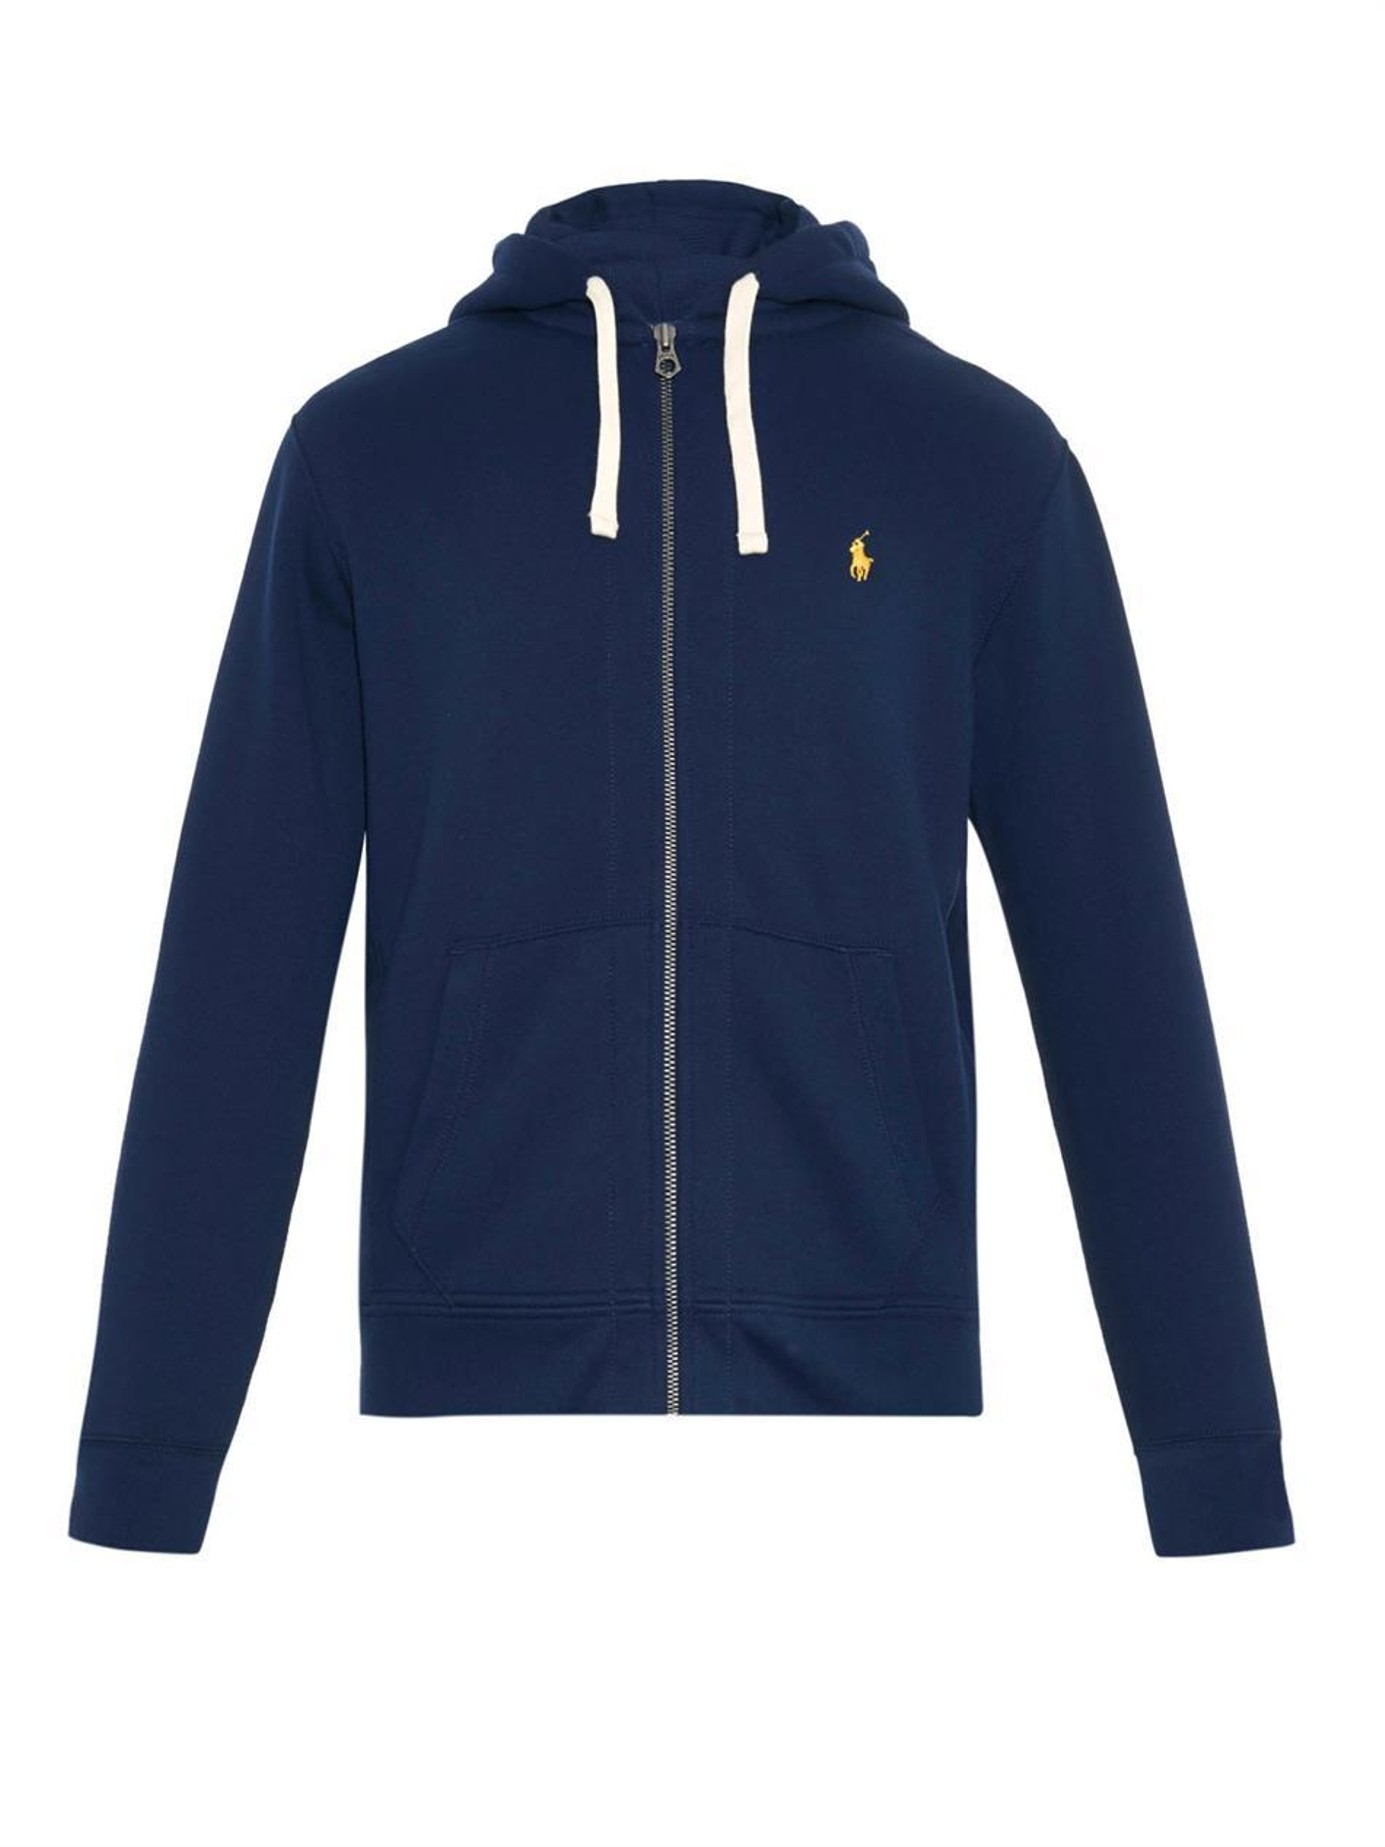 Polo Ralph Lauren Cotton Zip-up Hooded Sweatshirt in Navy (Blue) for Men -  Lyst